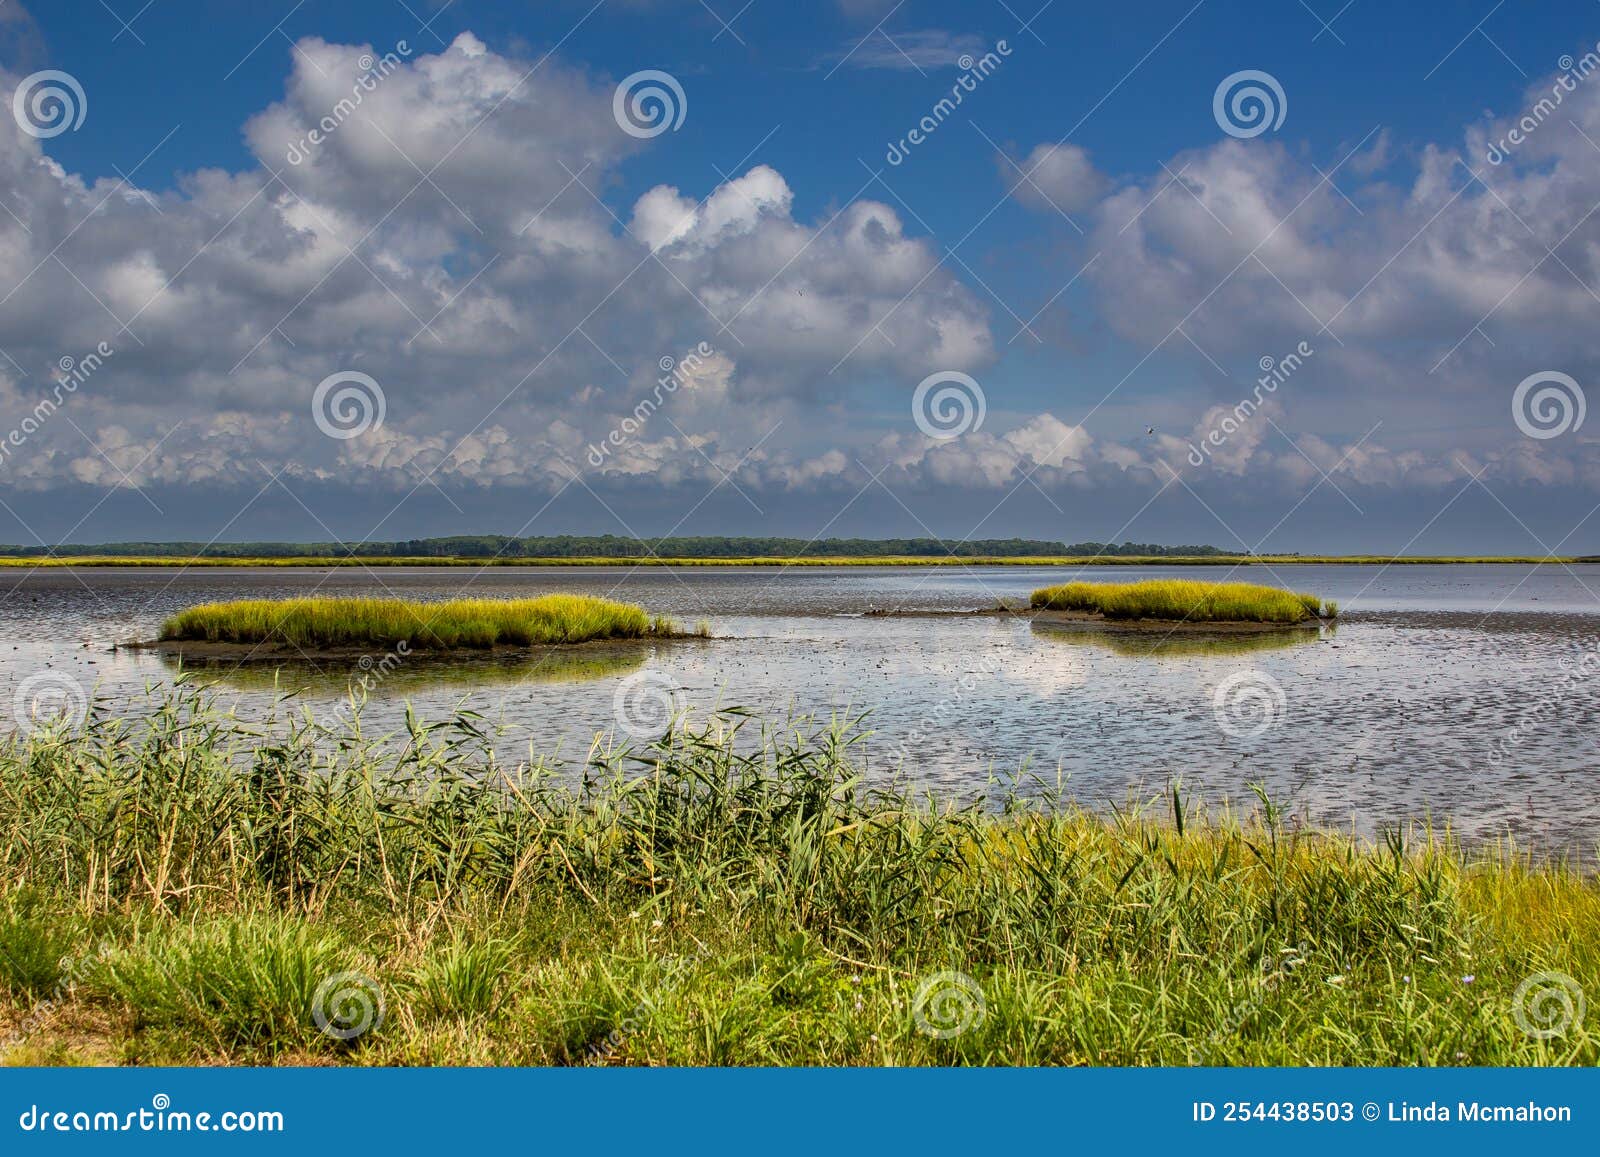 landscape image of the wetlands at bombay hook wildlife refuge nwr.